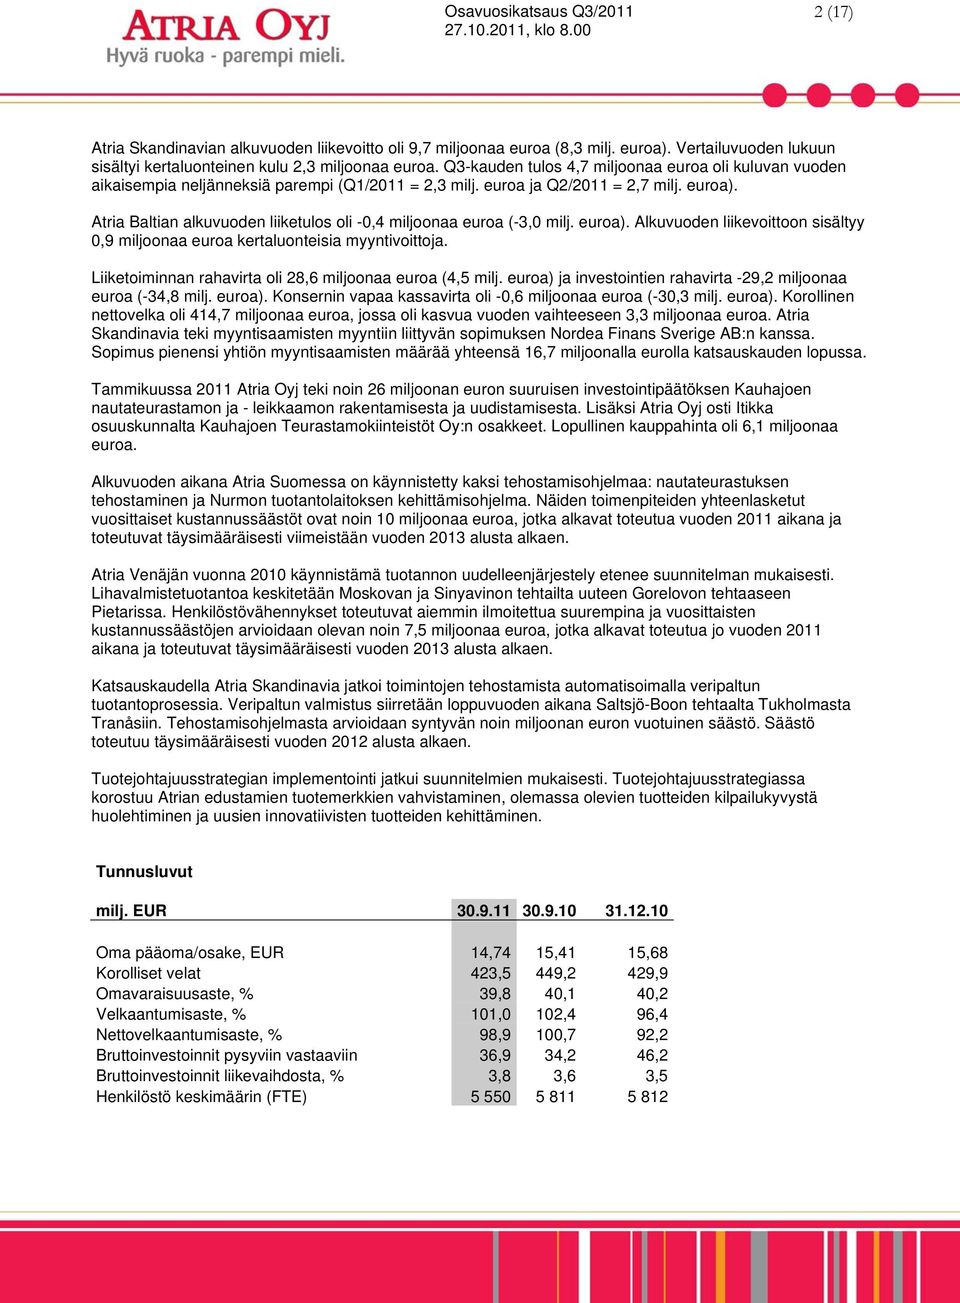 Atria Baltian alkuvuoden liiketulos oli -0,4 miljoonaa euroa (-3,0 milj. euroa). Alkuvuoden liikevoittoon sisältyy 0,9 miljoonaa euroa kertaluonteisia myyntivoittoja.